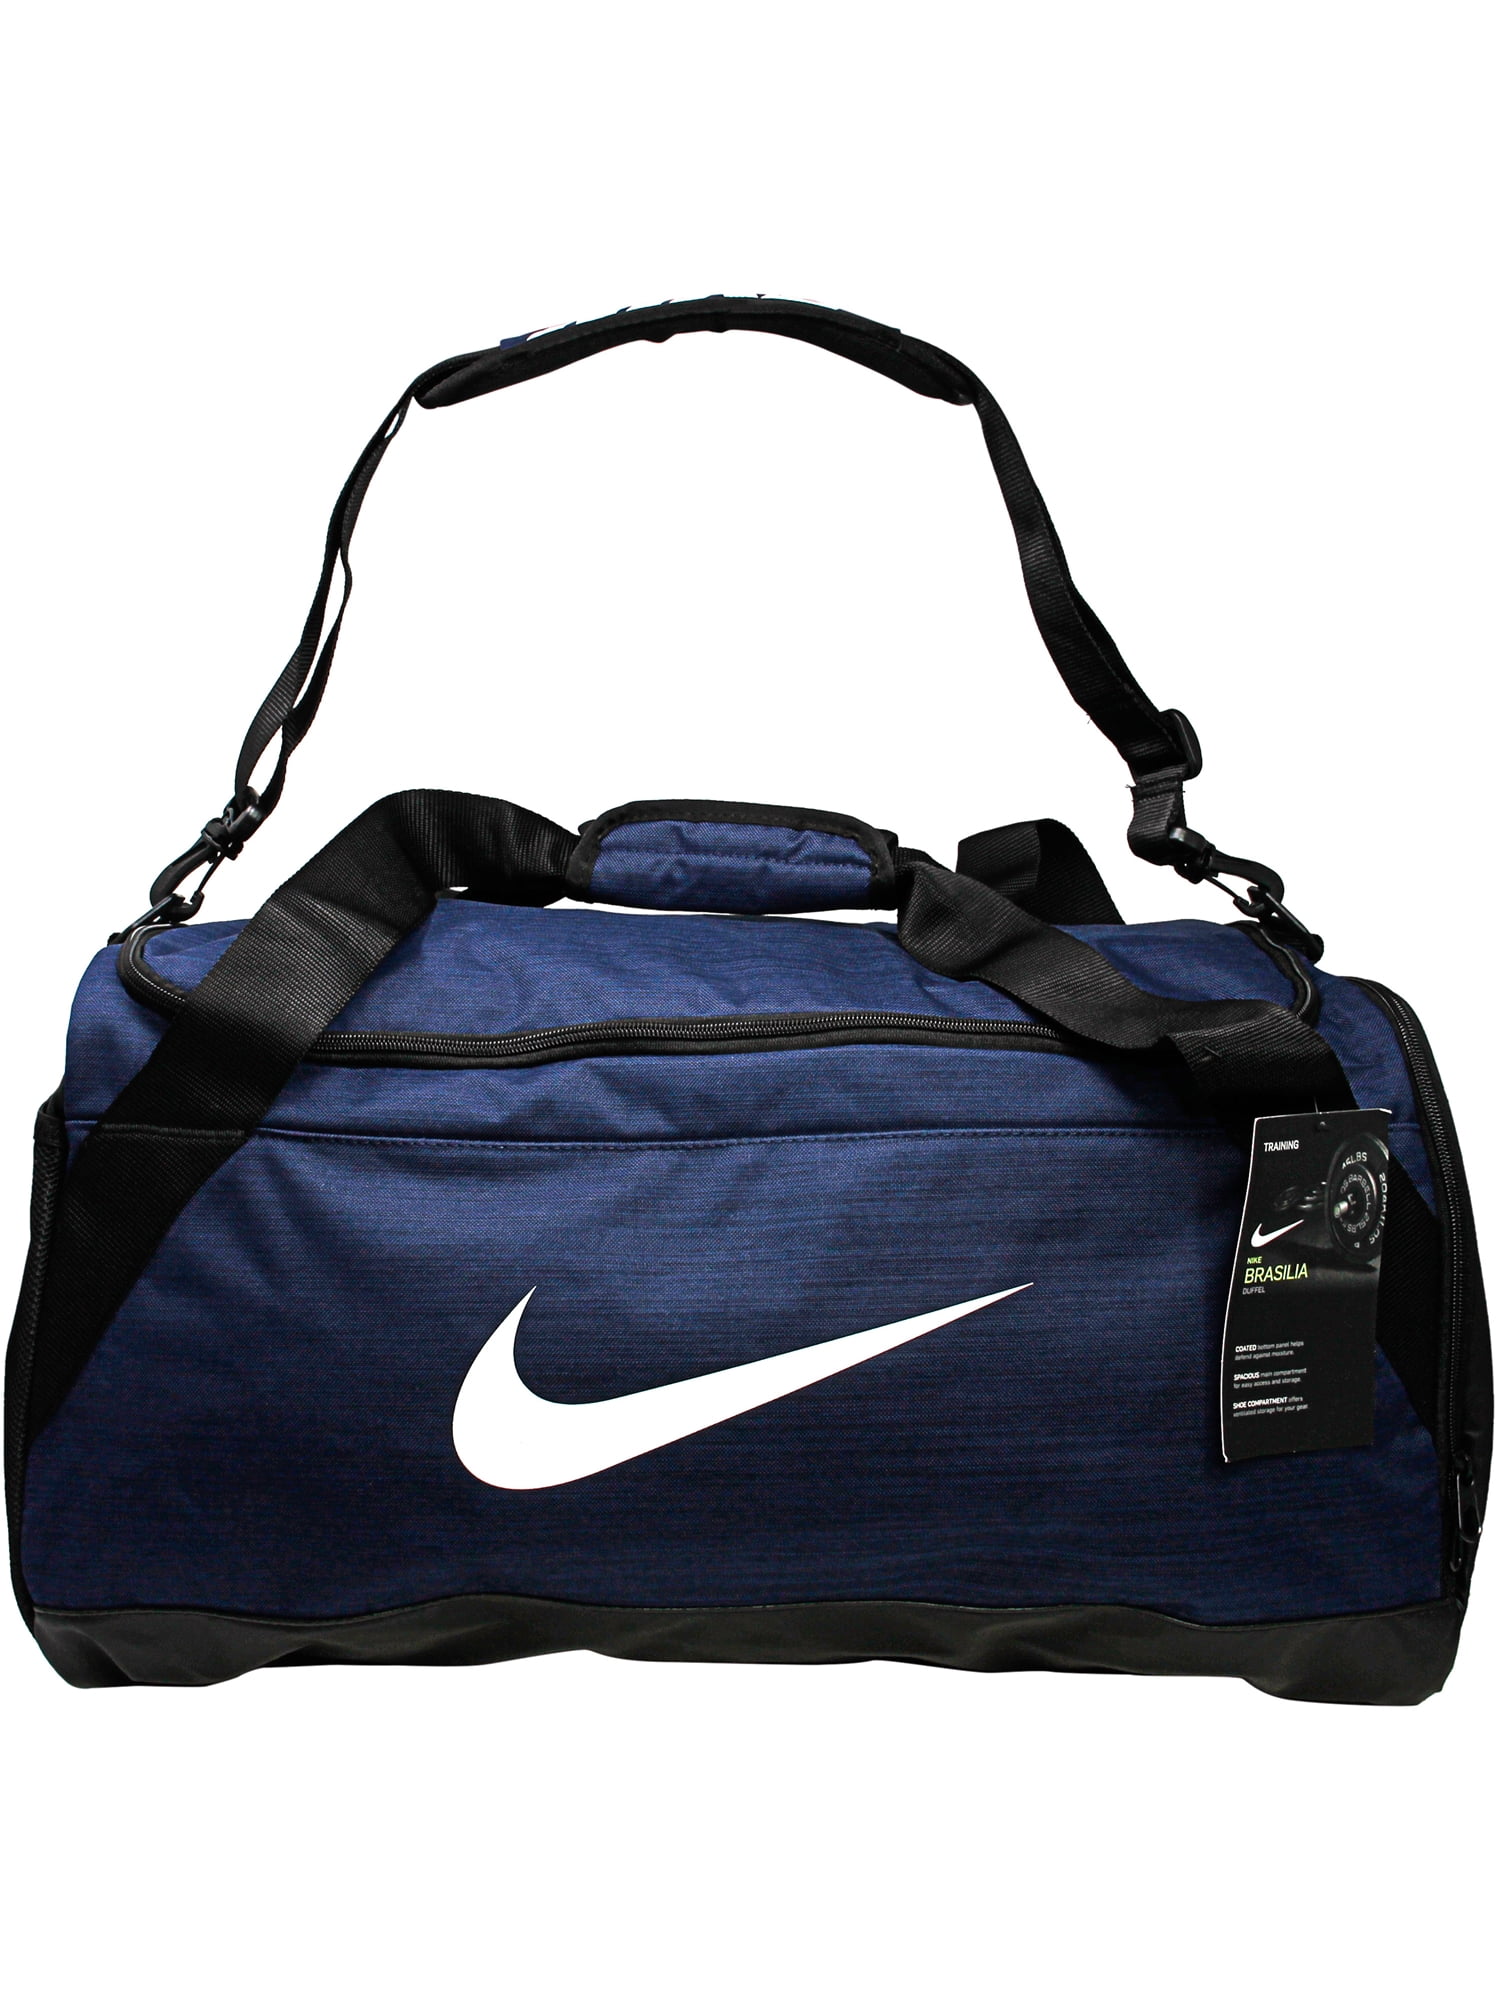 nike travel bag duffle bag sports backpack